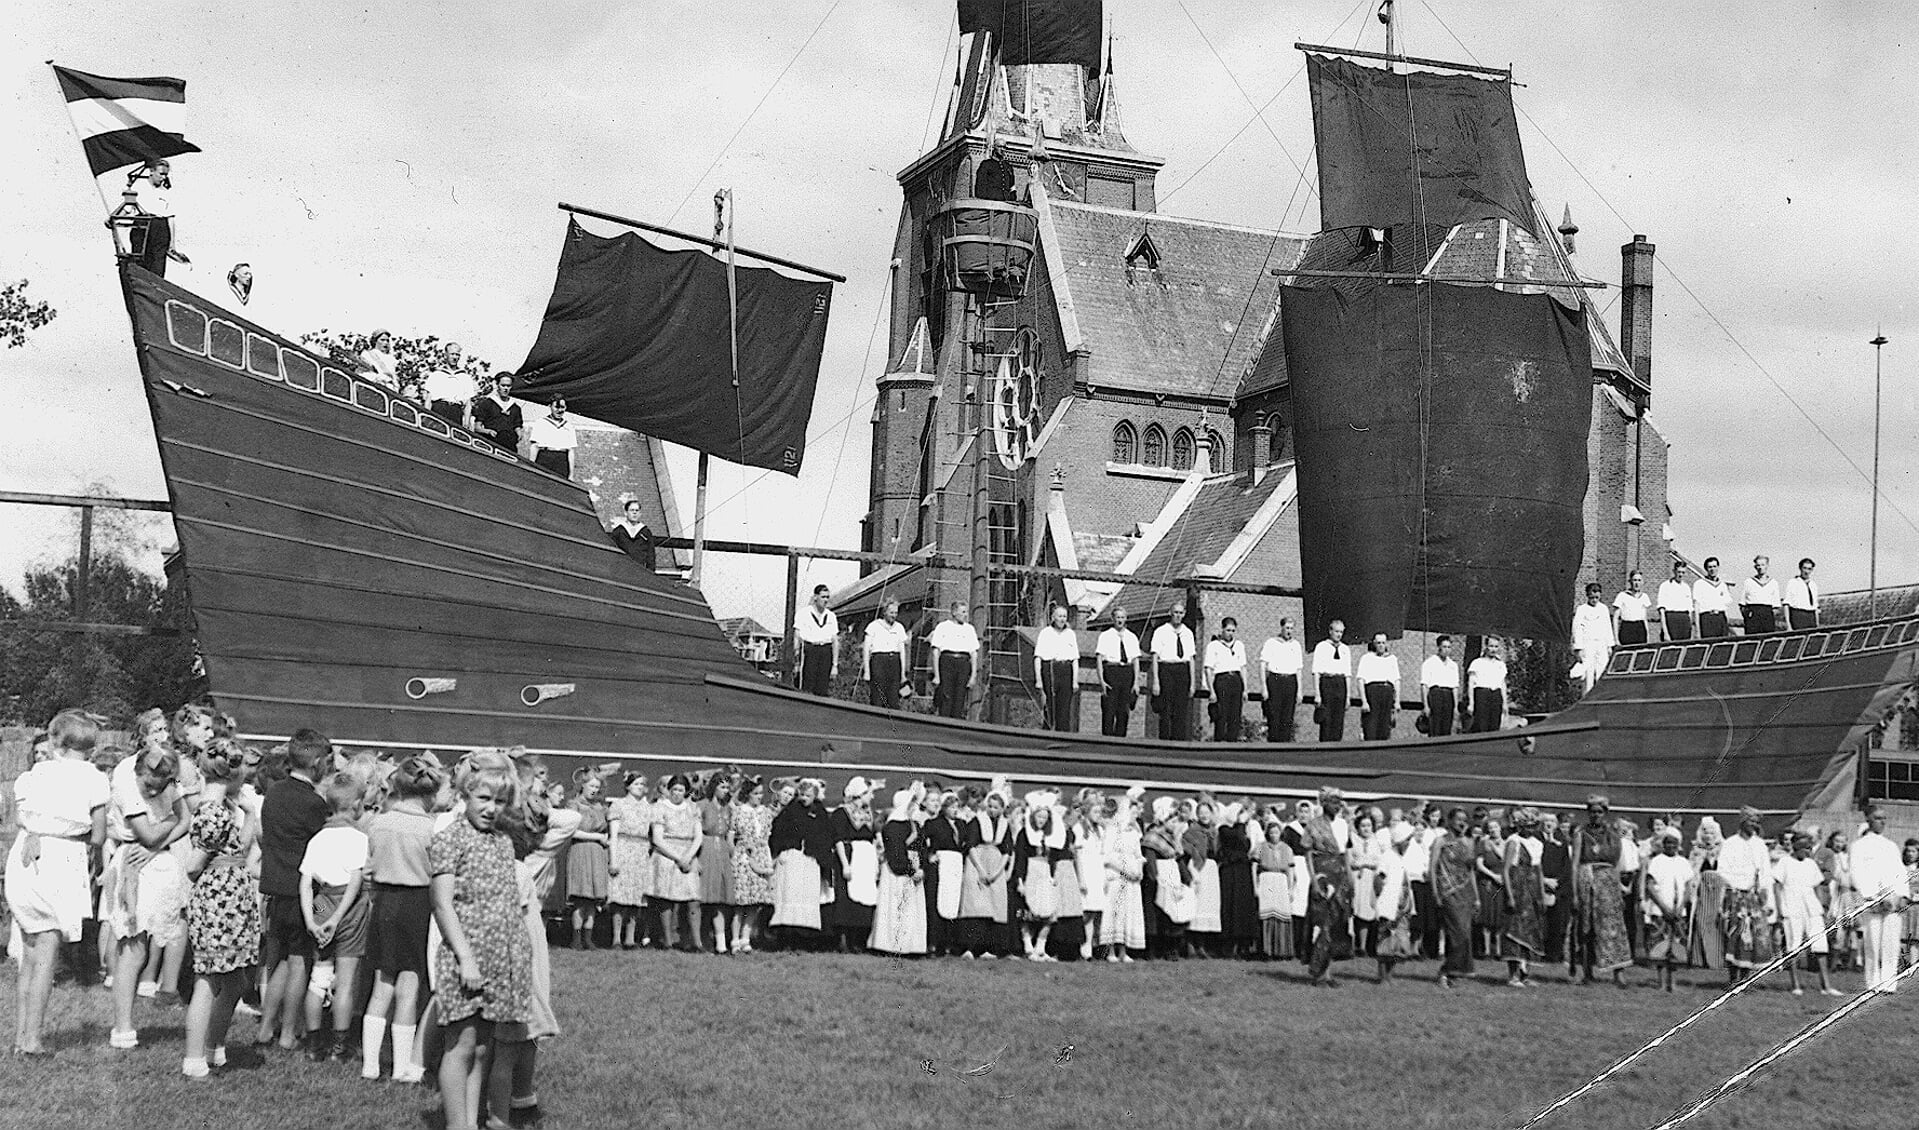 Het 'schip van de Staat' vormde de achtergrond voor het groot openluchtspel ’Plant den Meiboom’.

waarin de afgelopen oorlogsjaren werden uitgebeeld.